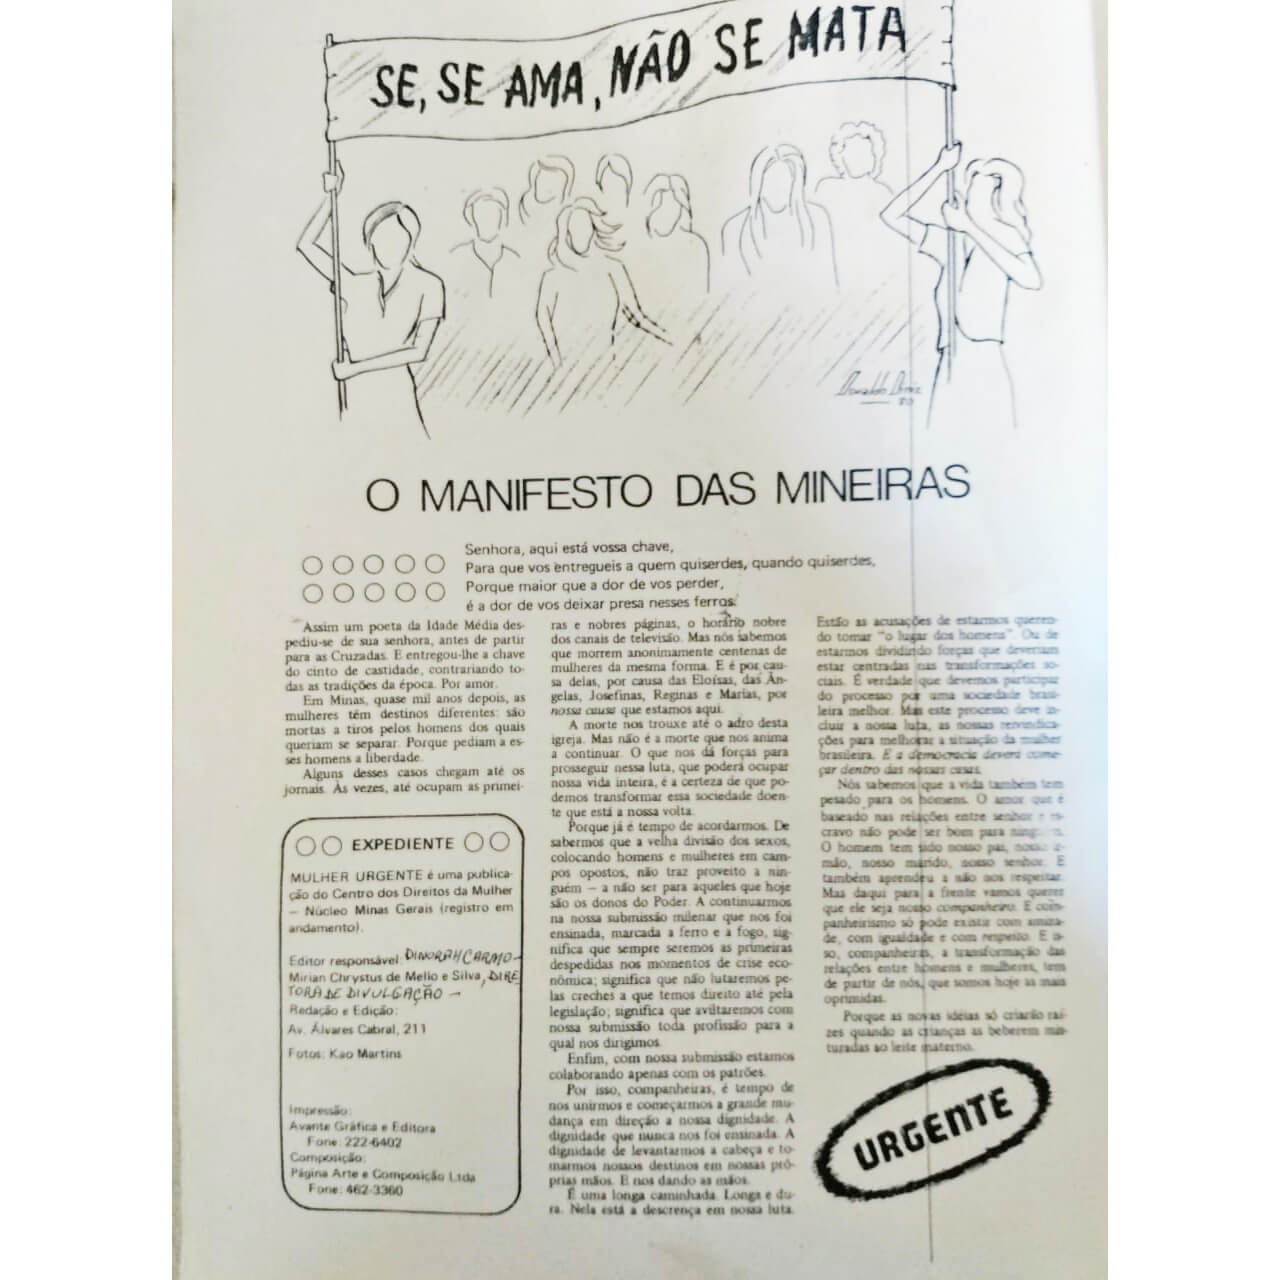 Pág. 02 de "Mulher Urgente" onde se pode ler o "Manifesto das Mineiras" lido por Mirian Chrystus durante a noite do ato público de 1980.  A arte final desta publicação foi feita pela jornalista Dione Dutra.